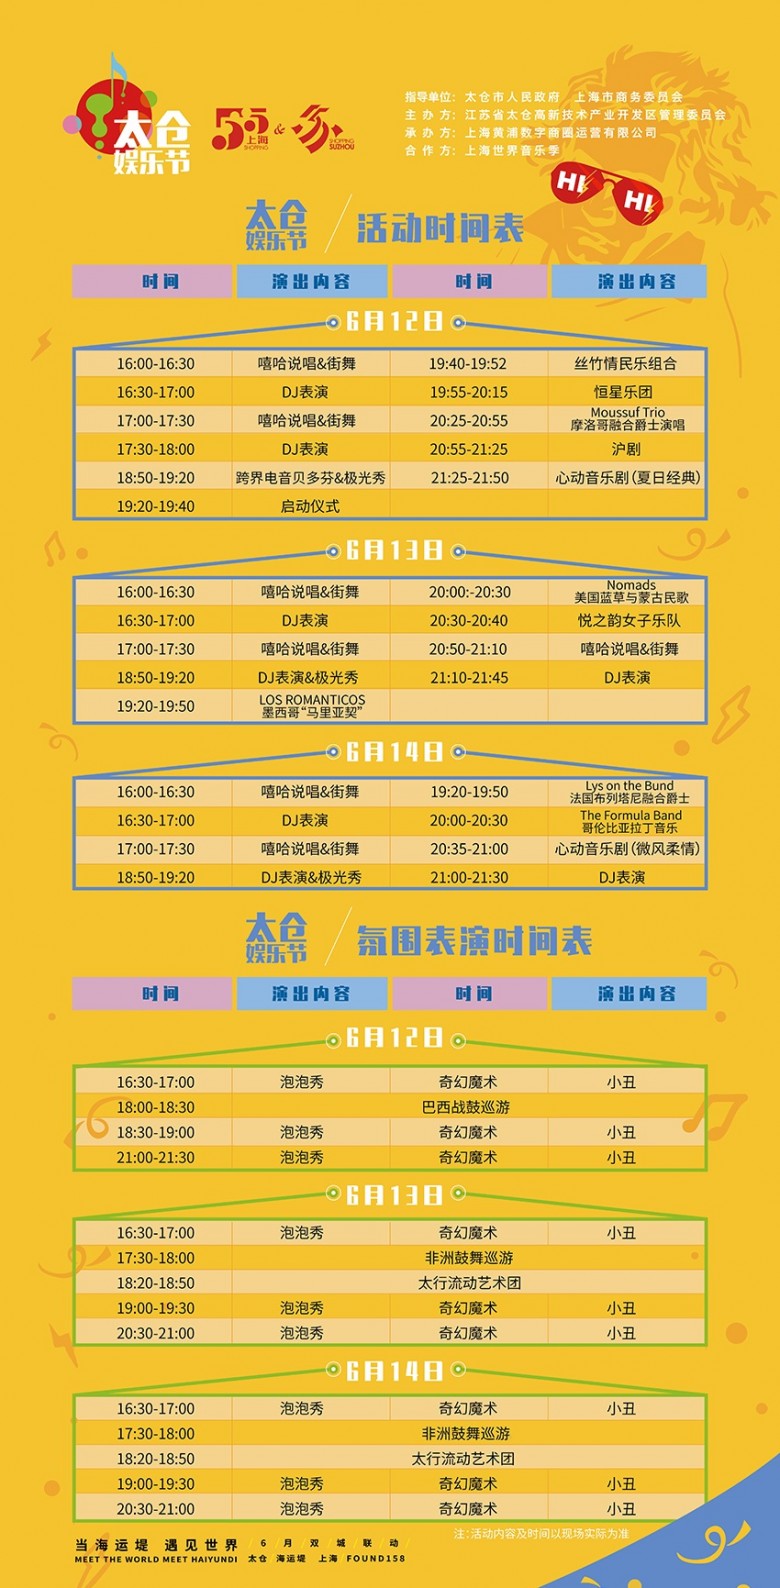 滬太雙城聯動“首屆太倉娛樂節”將於6月12日在太倉市舉行